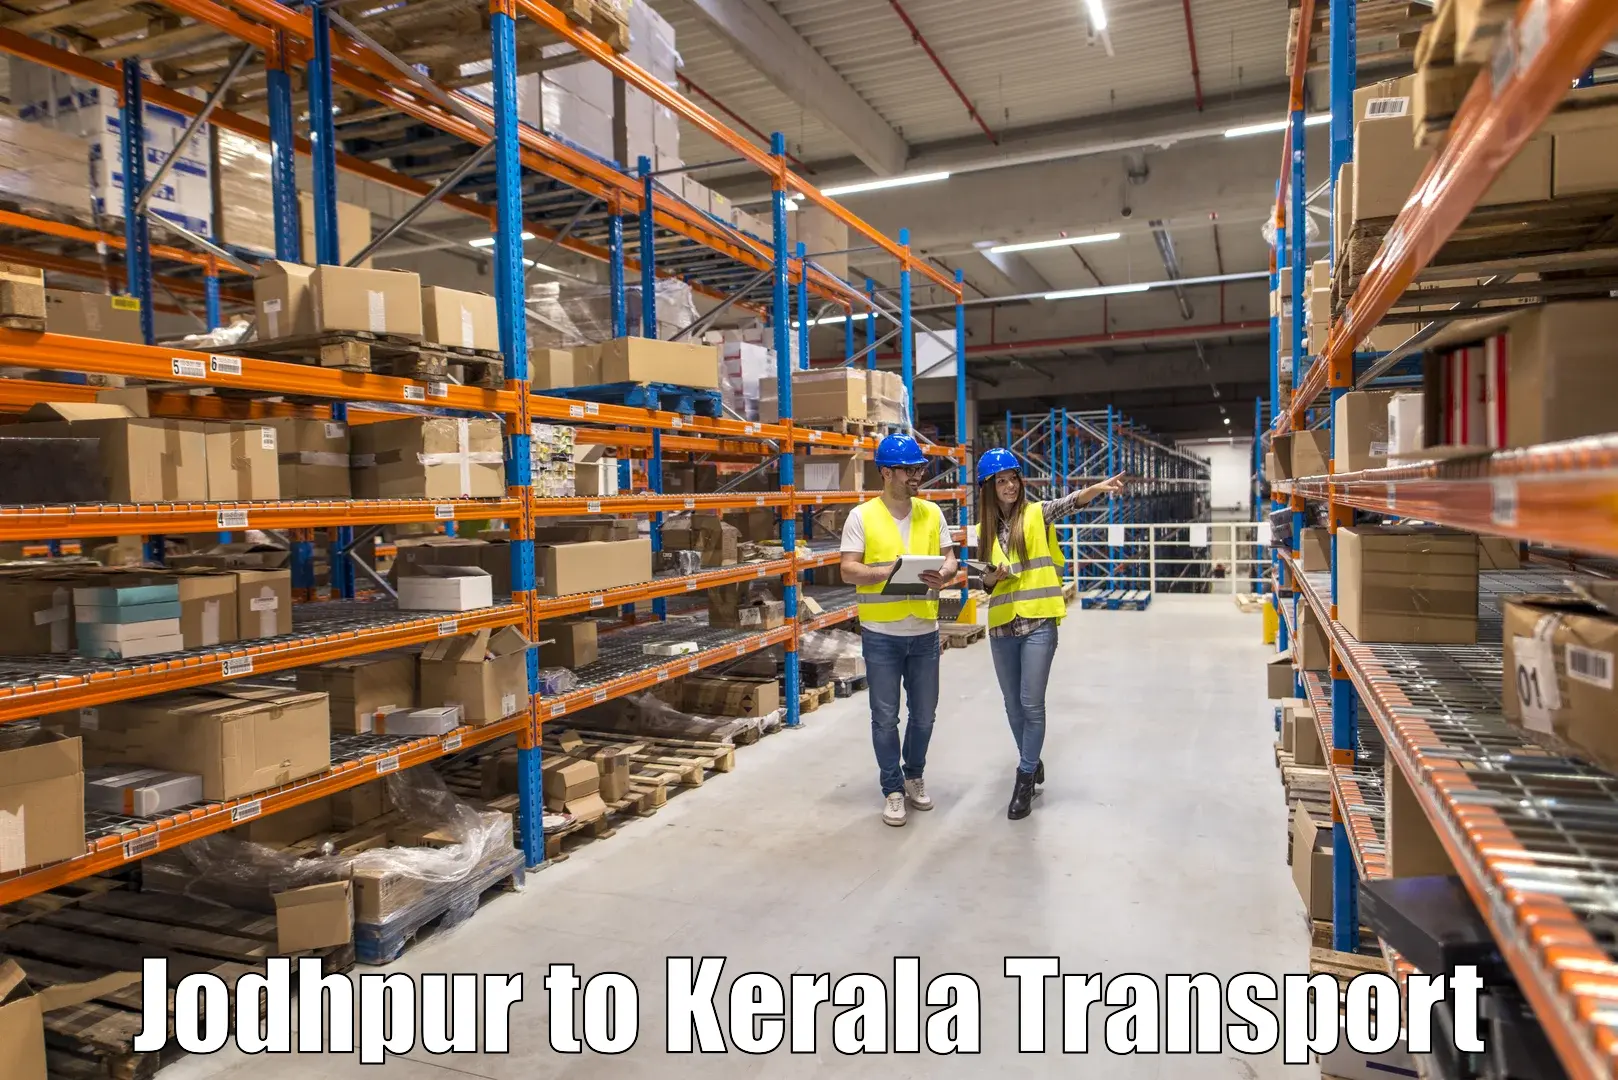 Lorry transport service in Jodhpur to Kallikkad